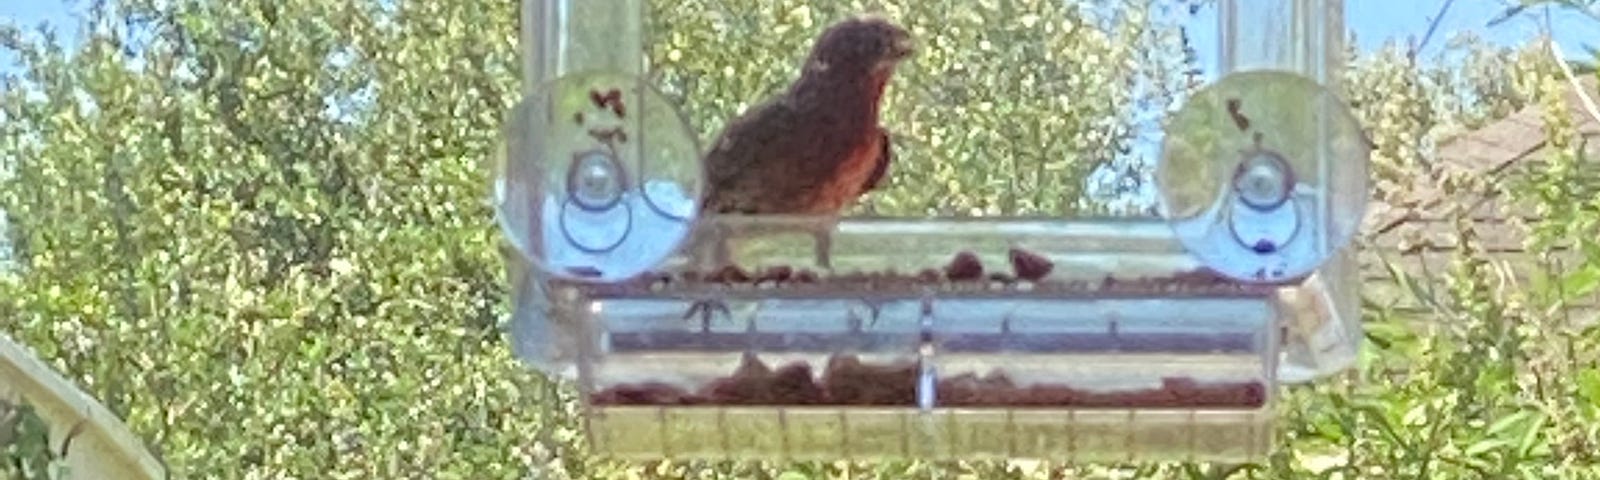 Purple finch at bird feeder.